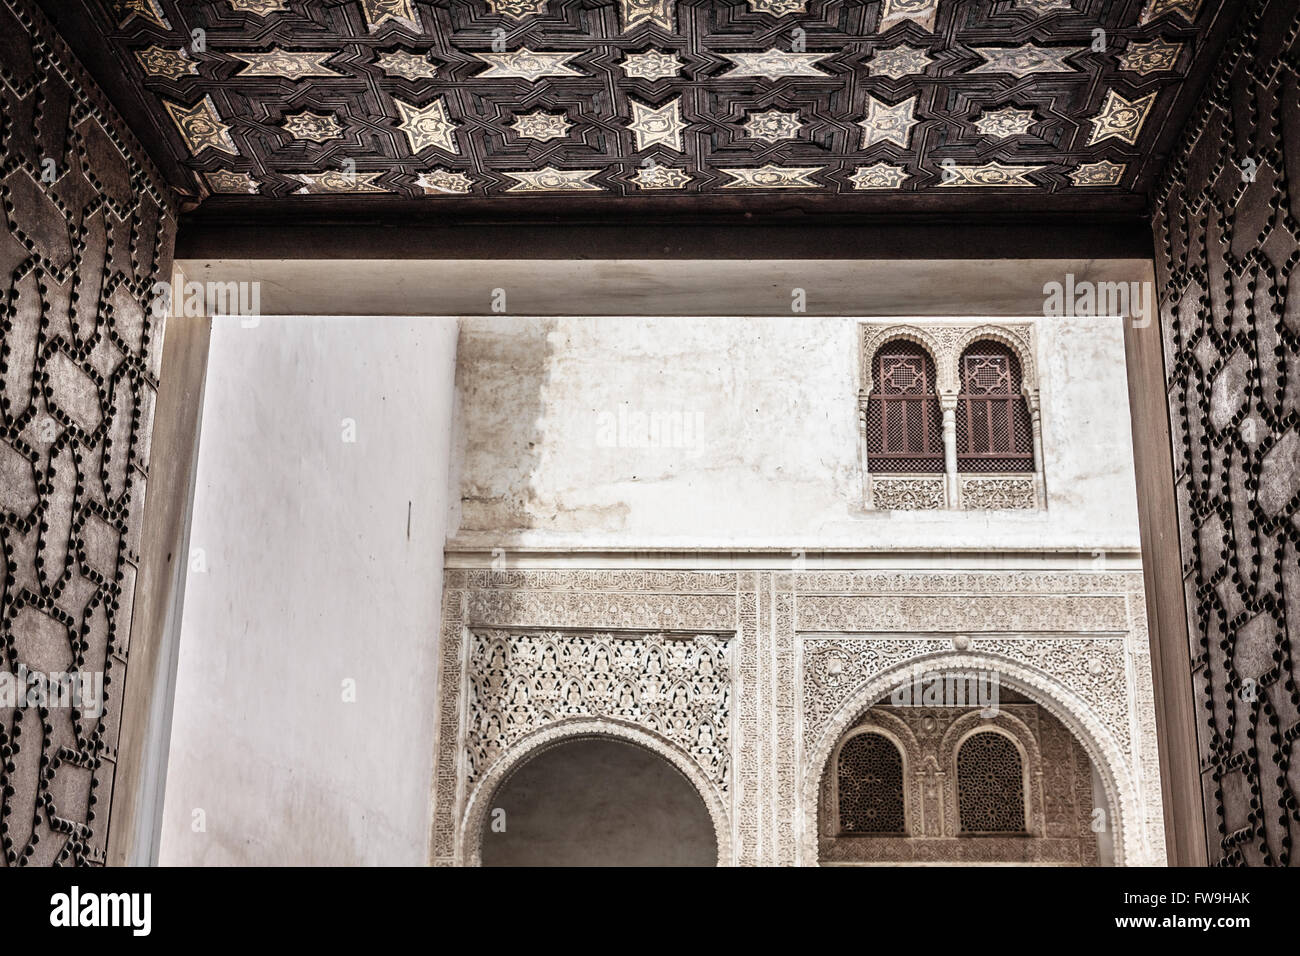 Ornements de style mauresque de l'Alhambra Palace Royal Islamique, Granada, Espagne. Banque D'Images